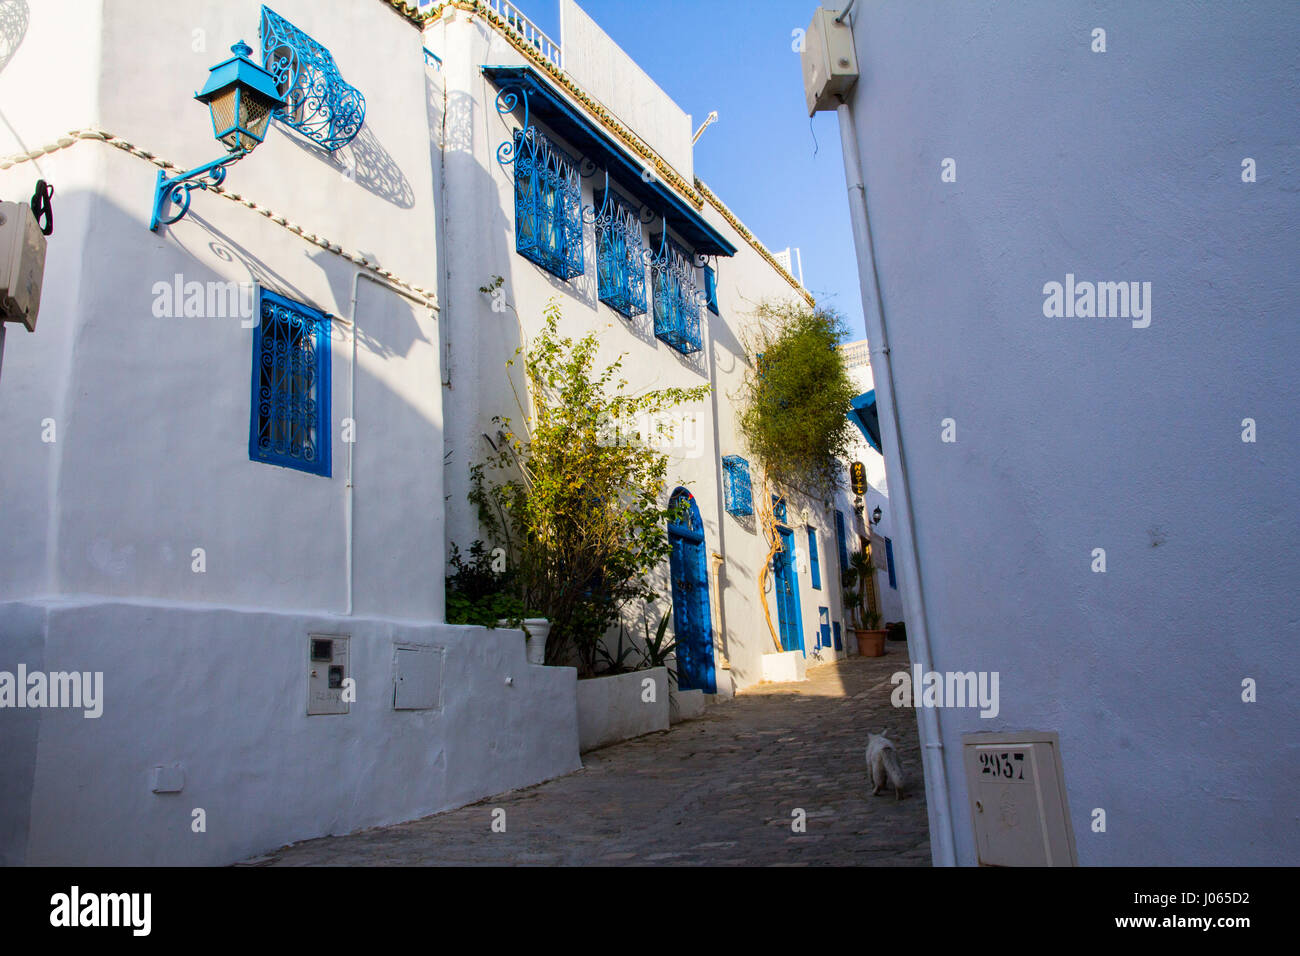 Ganz in weiß mit blau trim, die maurische (oder möglicherweise griechischen) inspiriert Hügel Stadt Sidi Bou Said ist eine Künstlerkolonie und beliebten touristischen verfolgen einfach keine Stockfoto